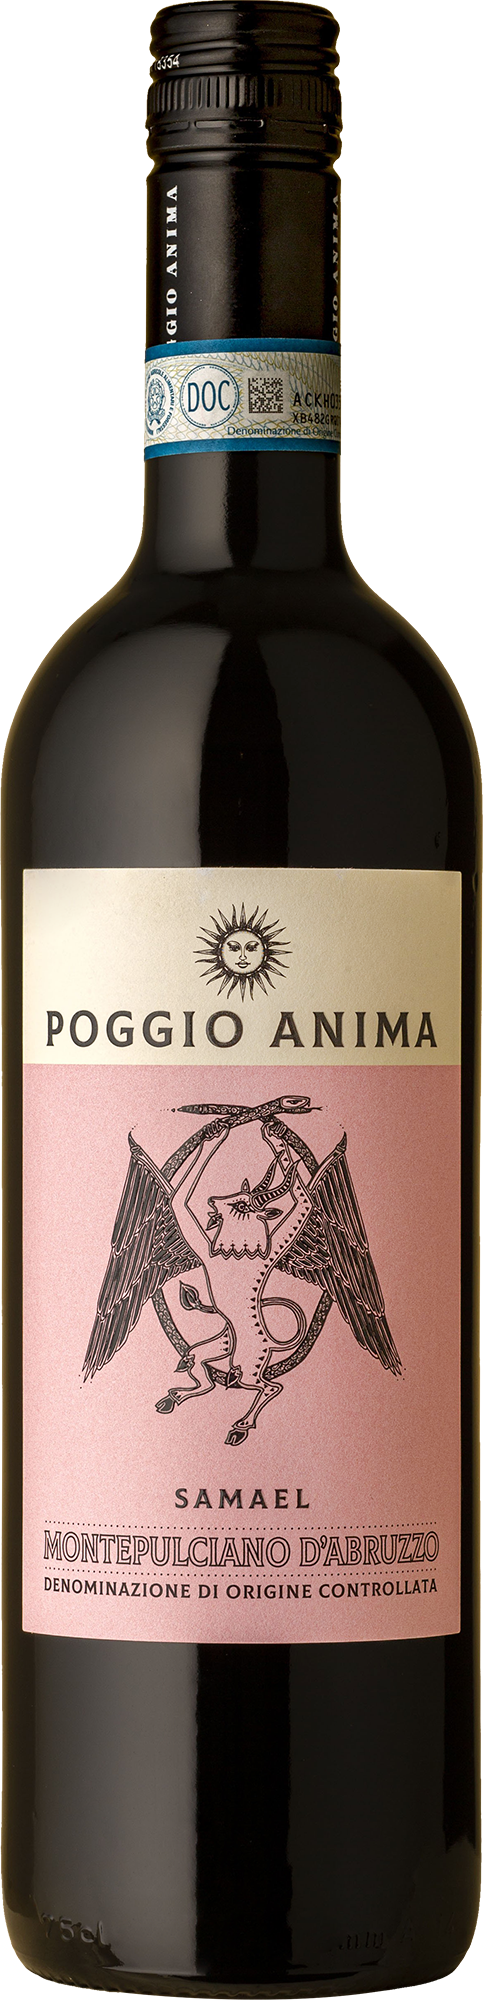 Poggio Anima - Montepulciano d'Abruzzo 2021 Red Wine